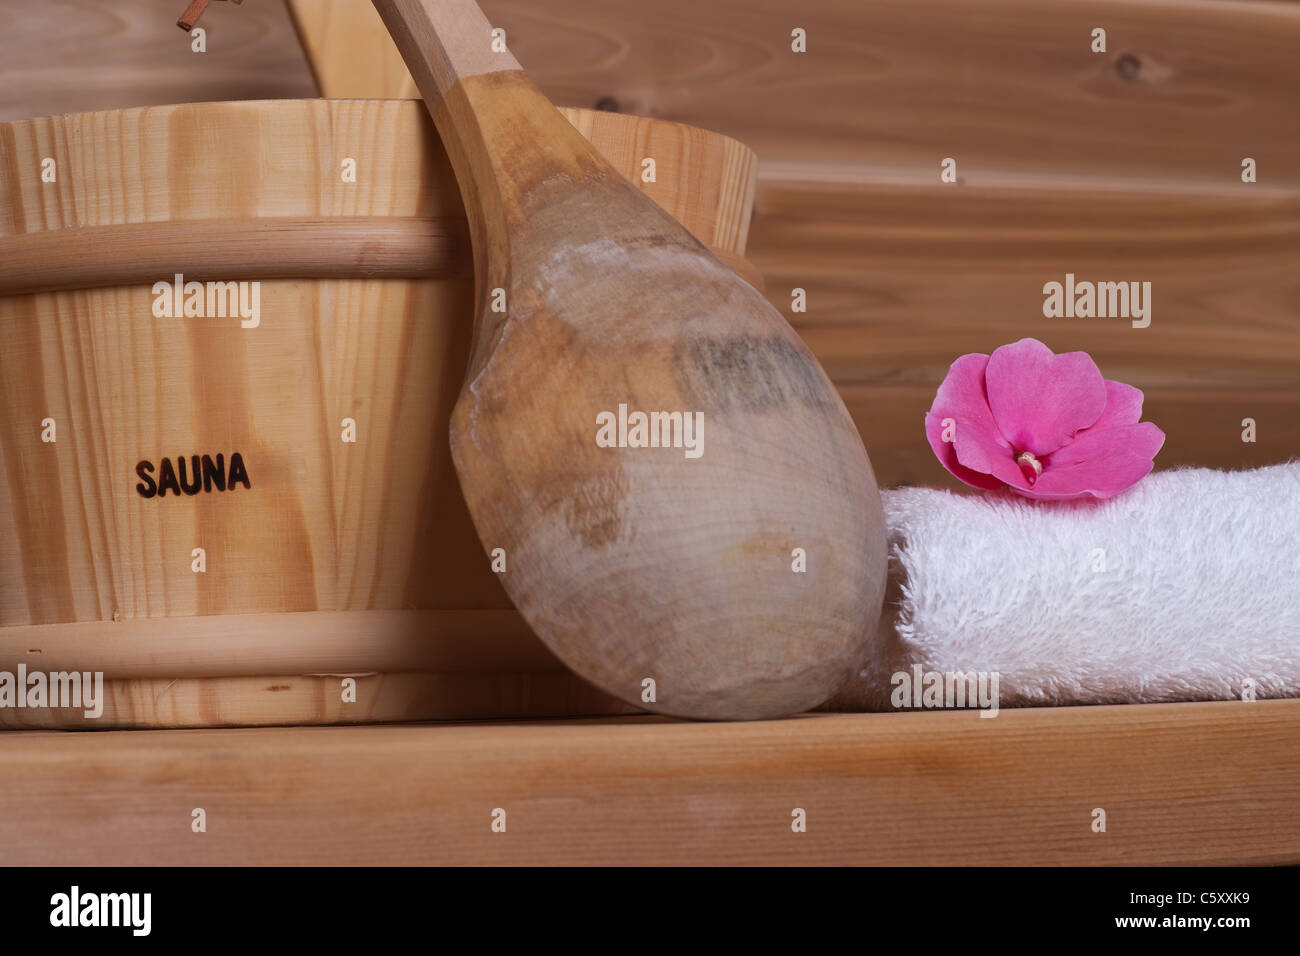 Toalla blanca con flor en la parte superior junto al cucharón con cucharón en una sauna de madera Foto de stock